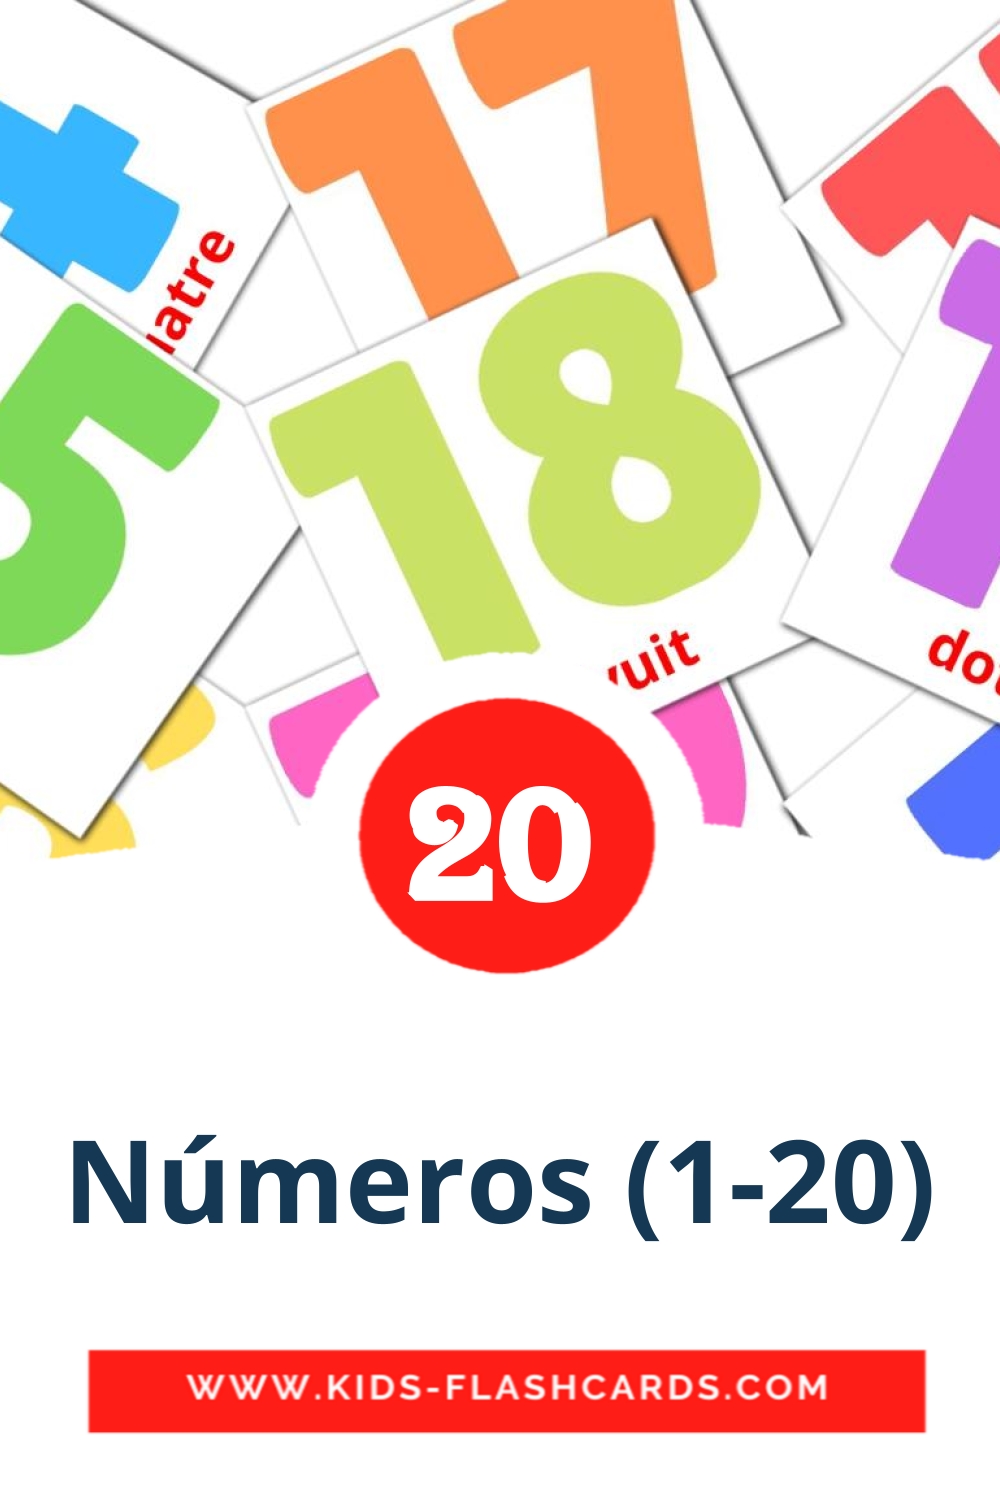 20 Cartões com Imagens de Números (1-20) para Jardim de Infância em catalão